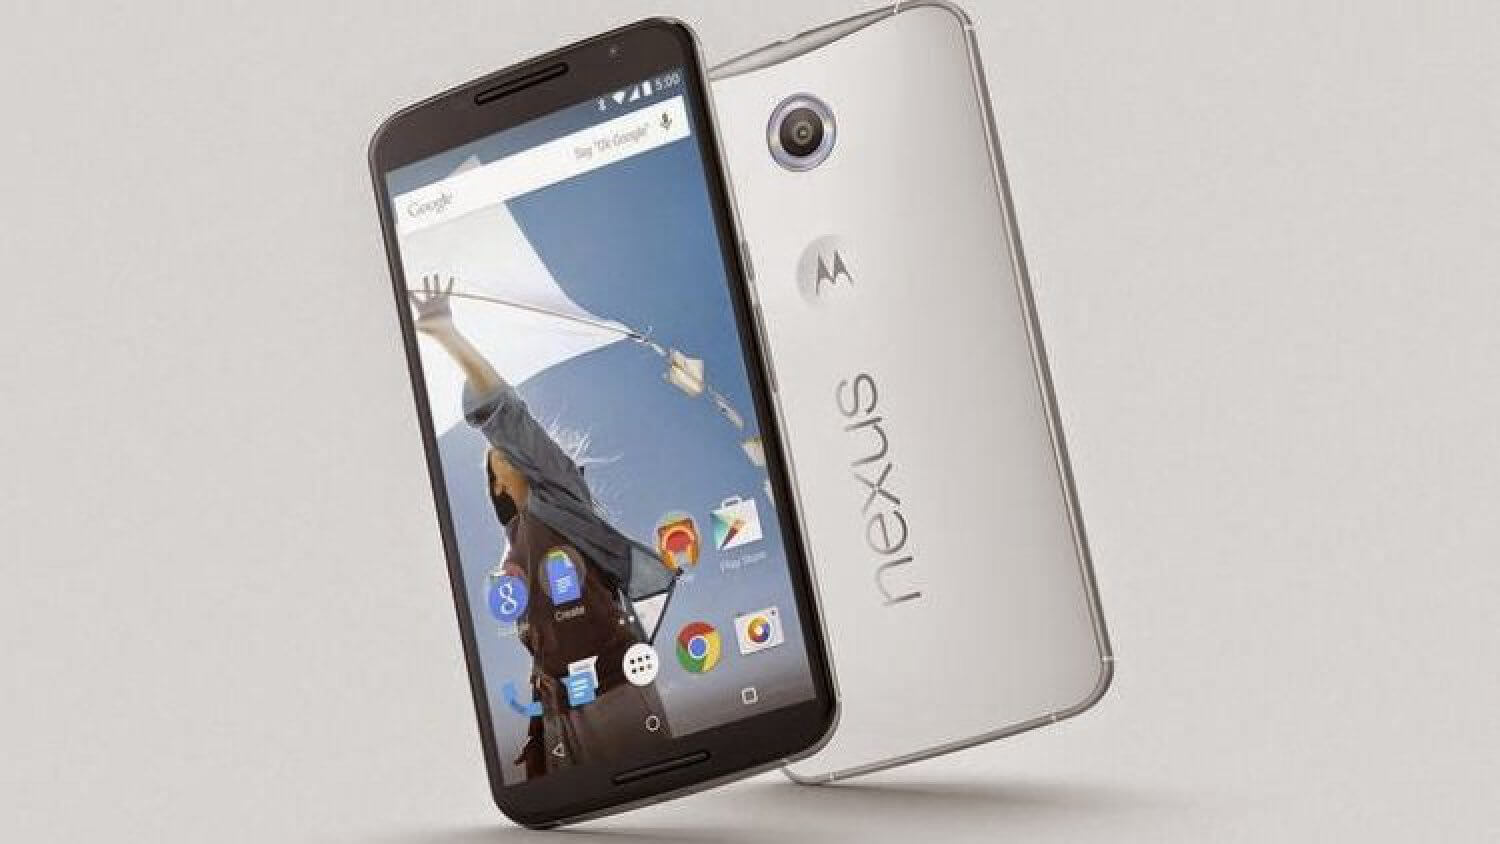 Droid Turbo оказался лучше Nexus 6 в соревновании Android-смартфонов Motorola? Фото.